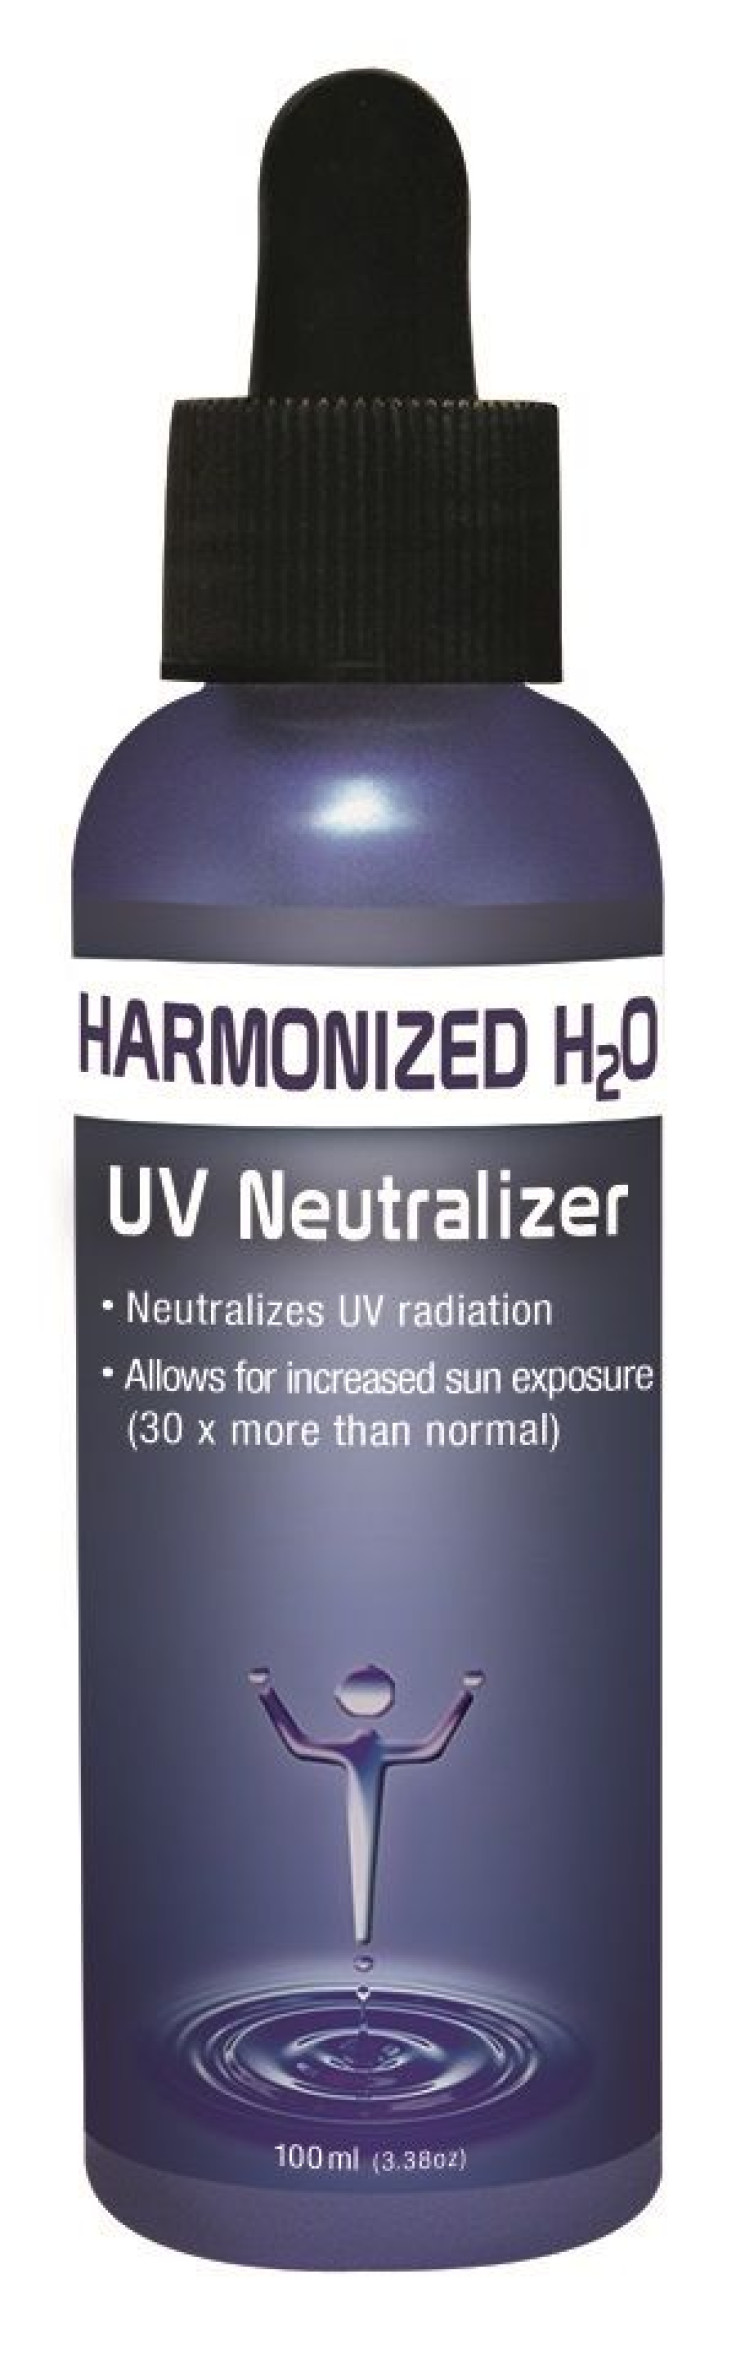 uv_neutralizer_H20 (2)